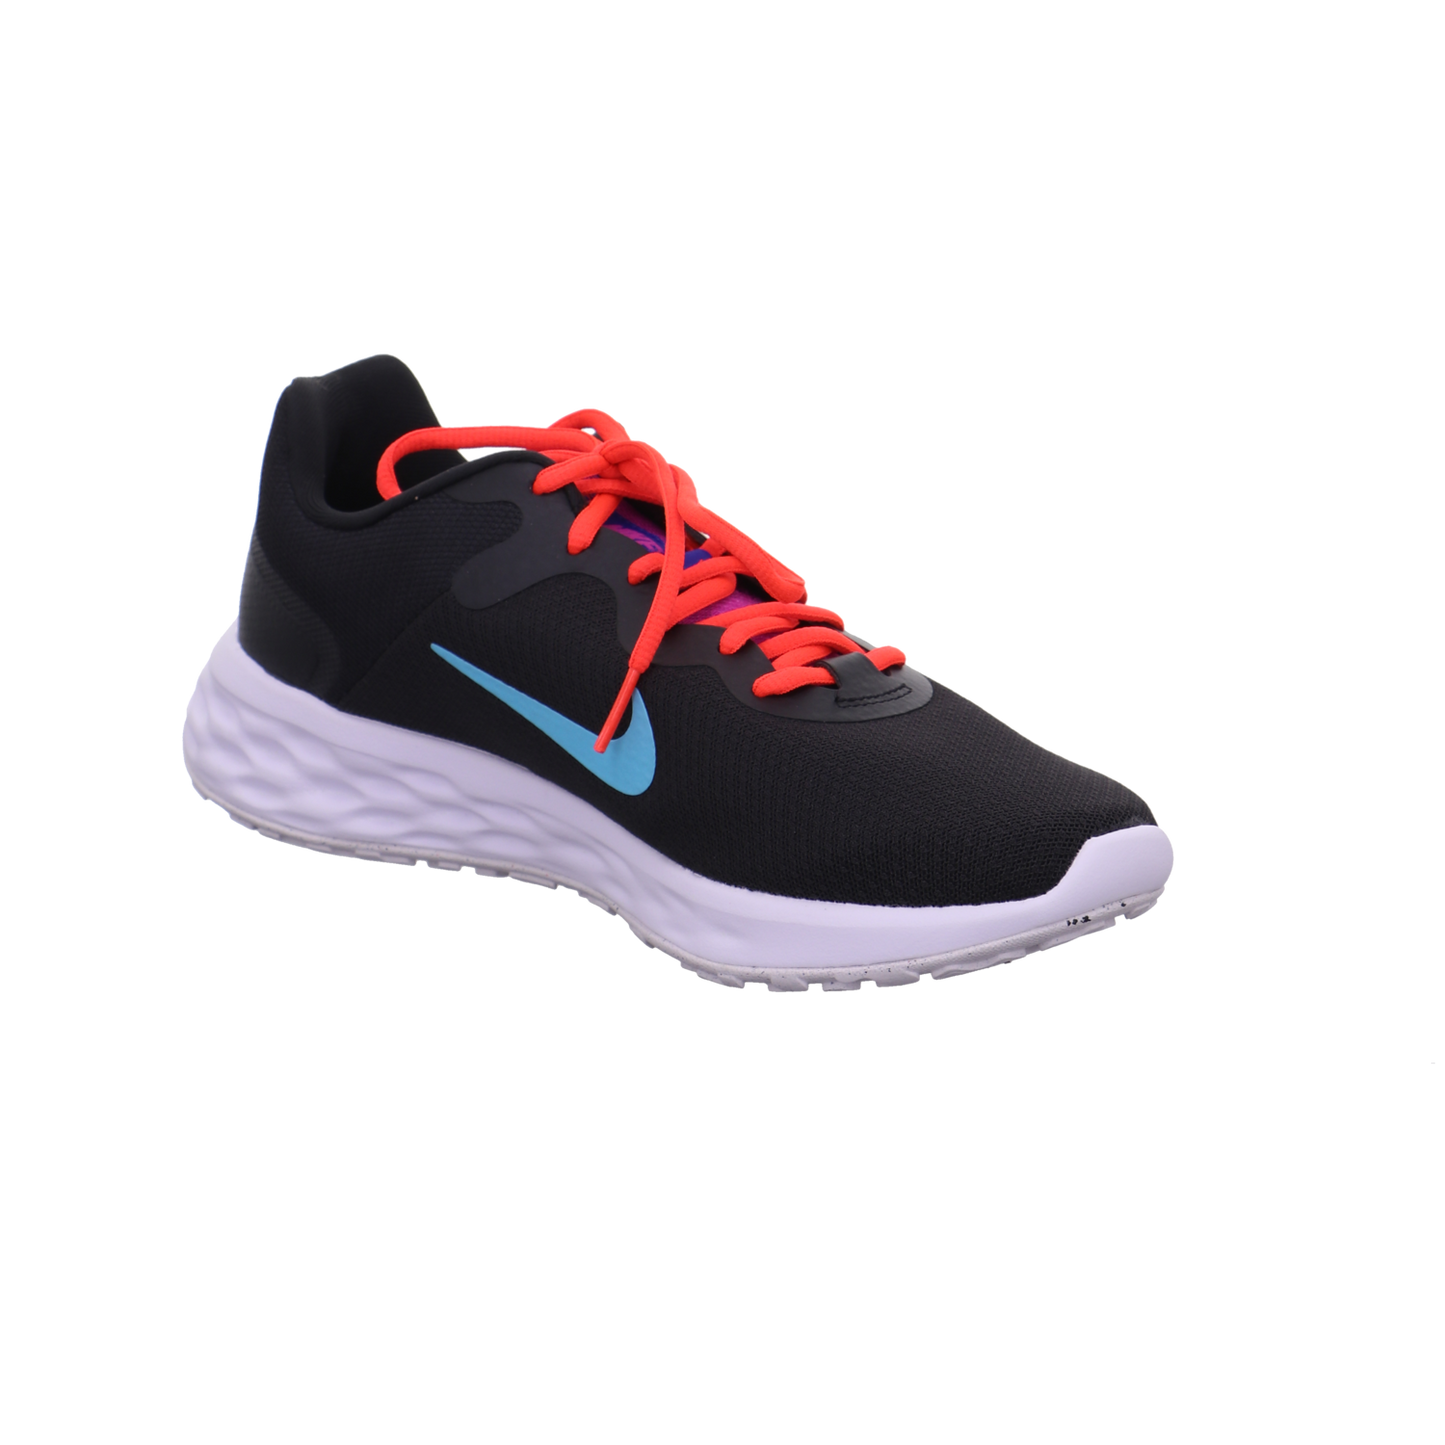 Nike Training und Hallenschuhe schwarz kombi Bild7